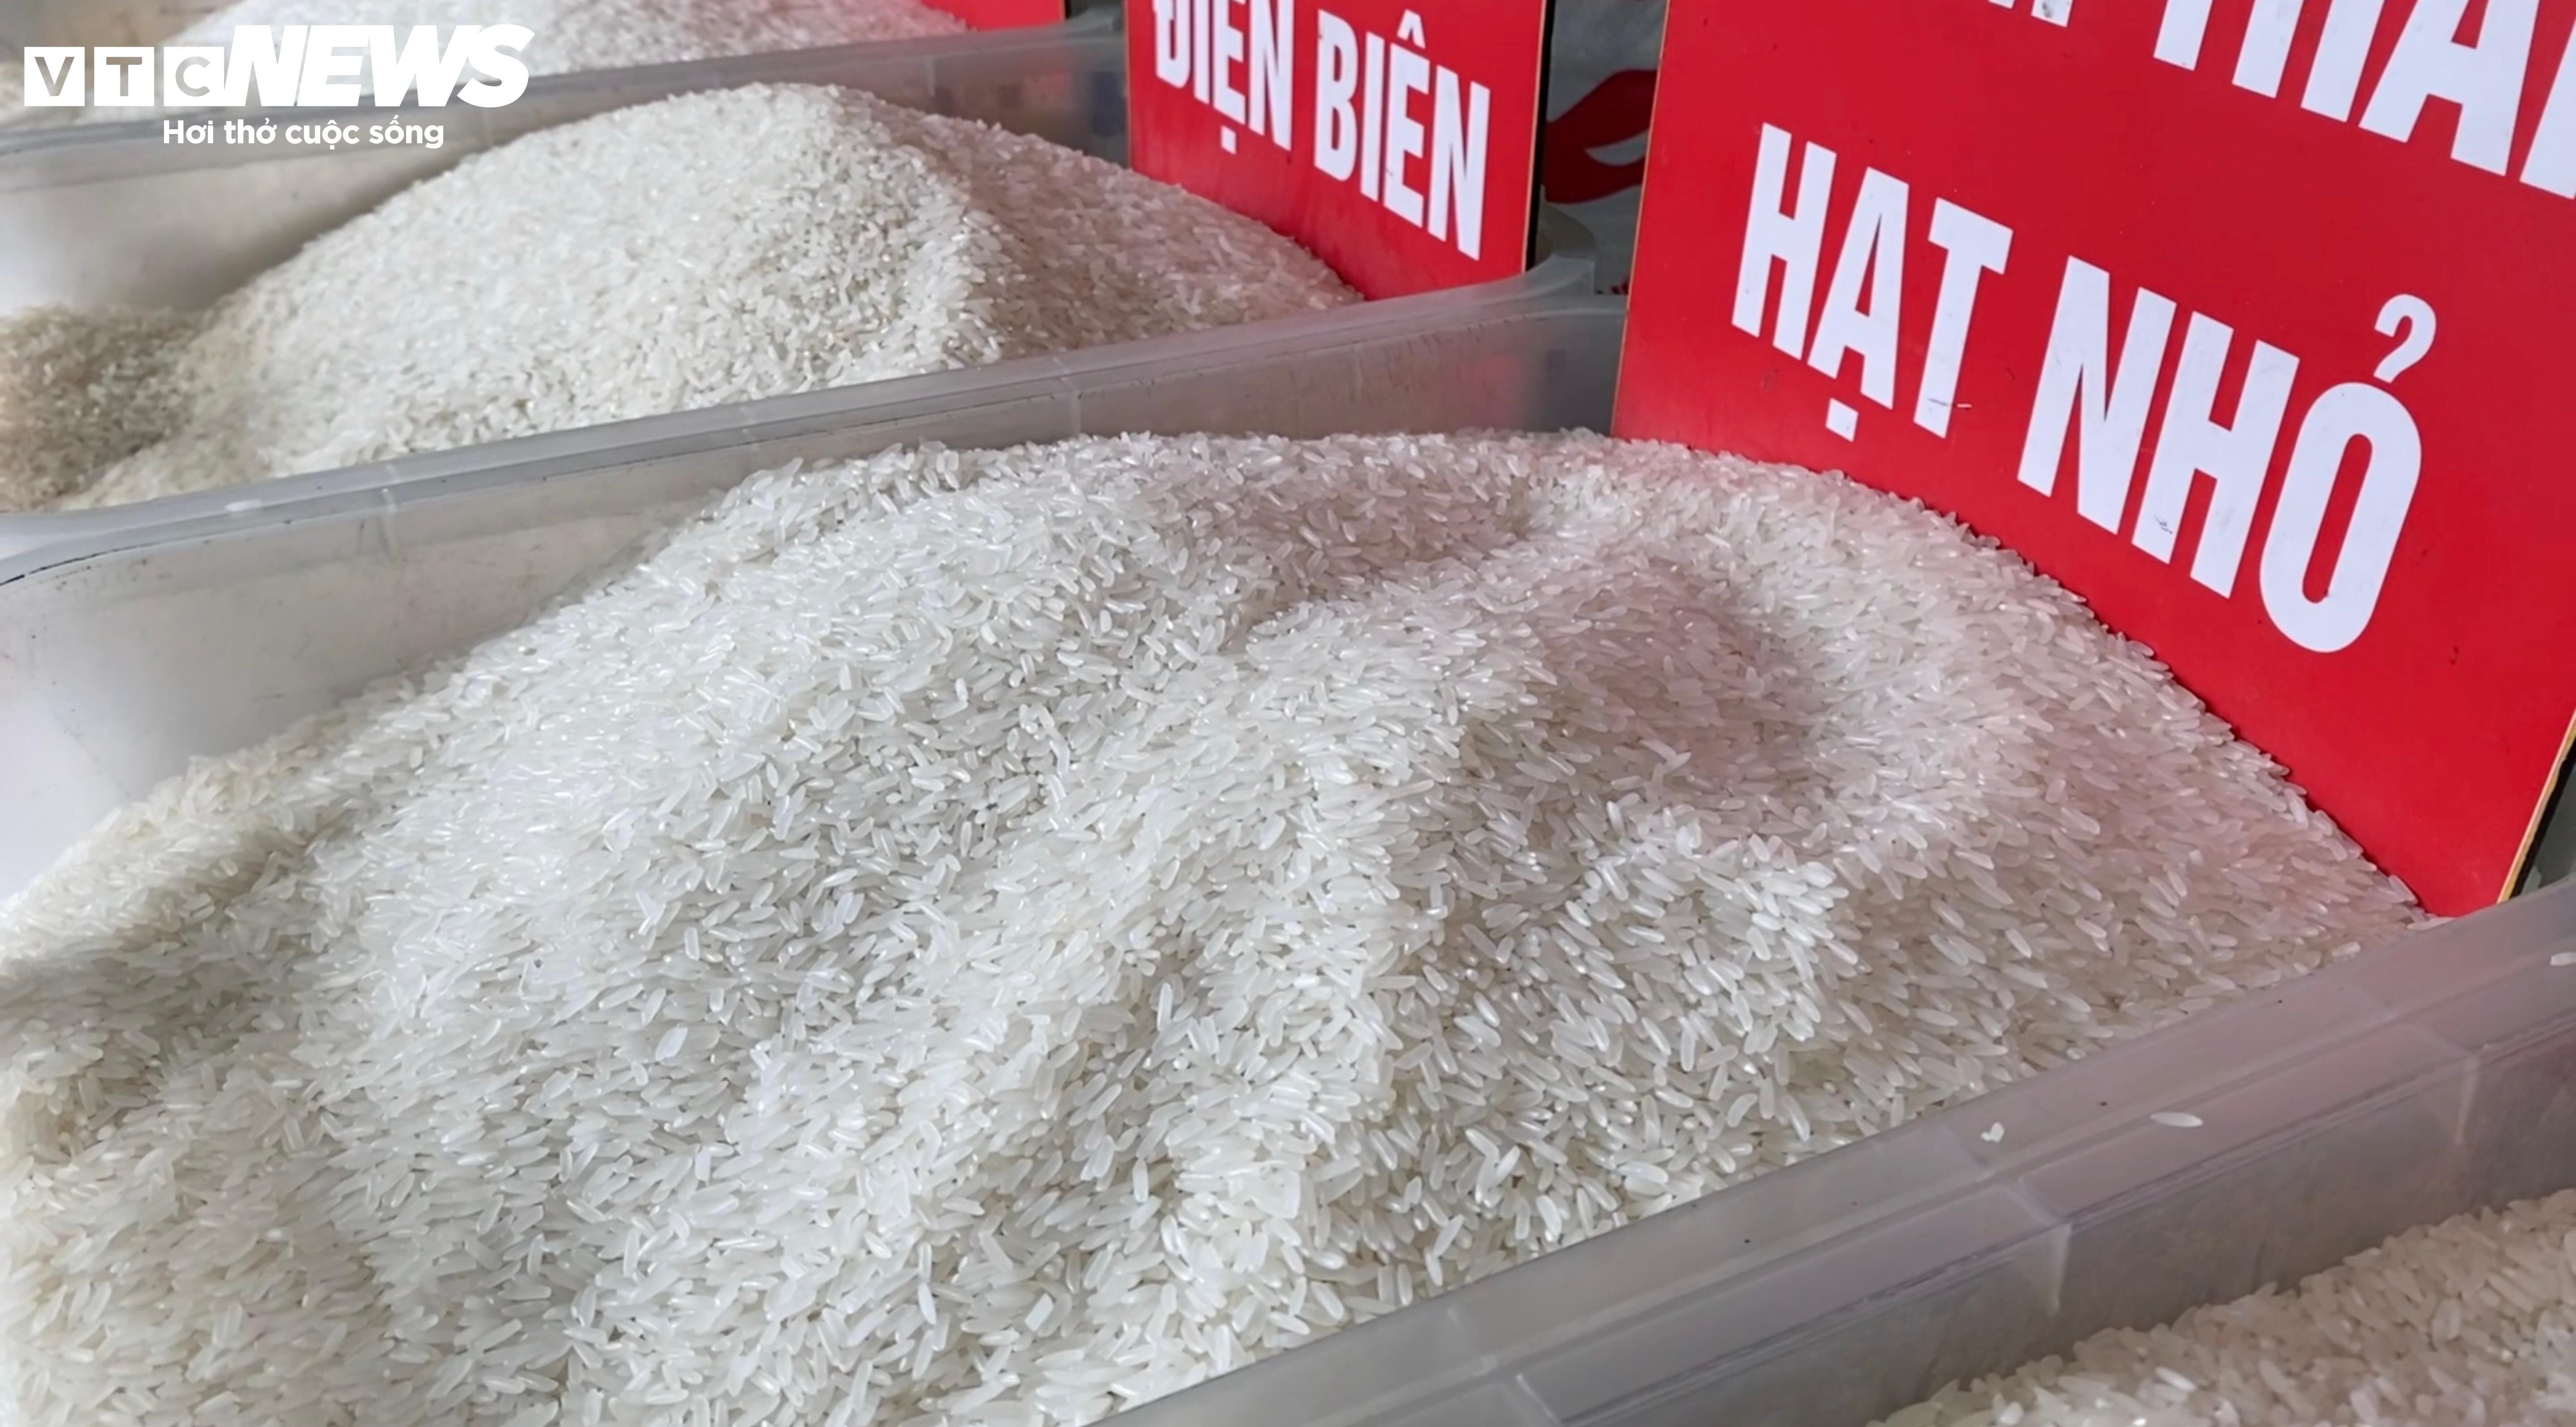 Anh Thịnh cho rằng, giá gạo xuất khẩu tăng khiến giá gạo bán lẻ tăng theo. Nếu gạo xuất khẩu hạ giá, giá gạo trong nước cũng sẽ nhanh chóng giảm.